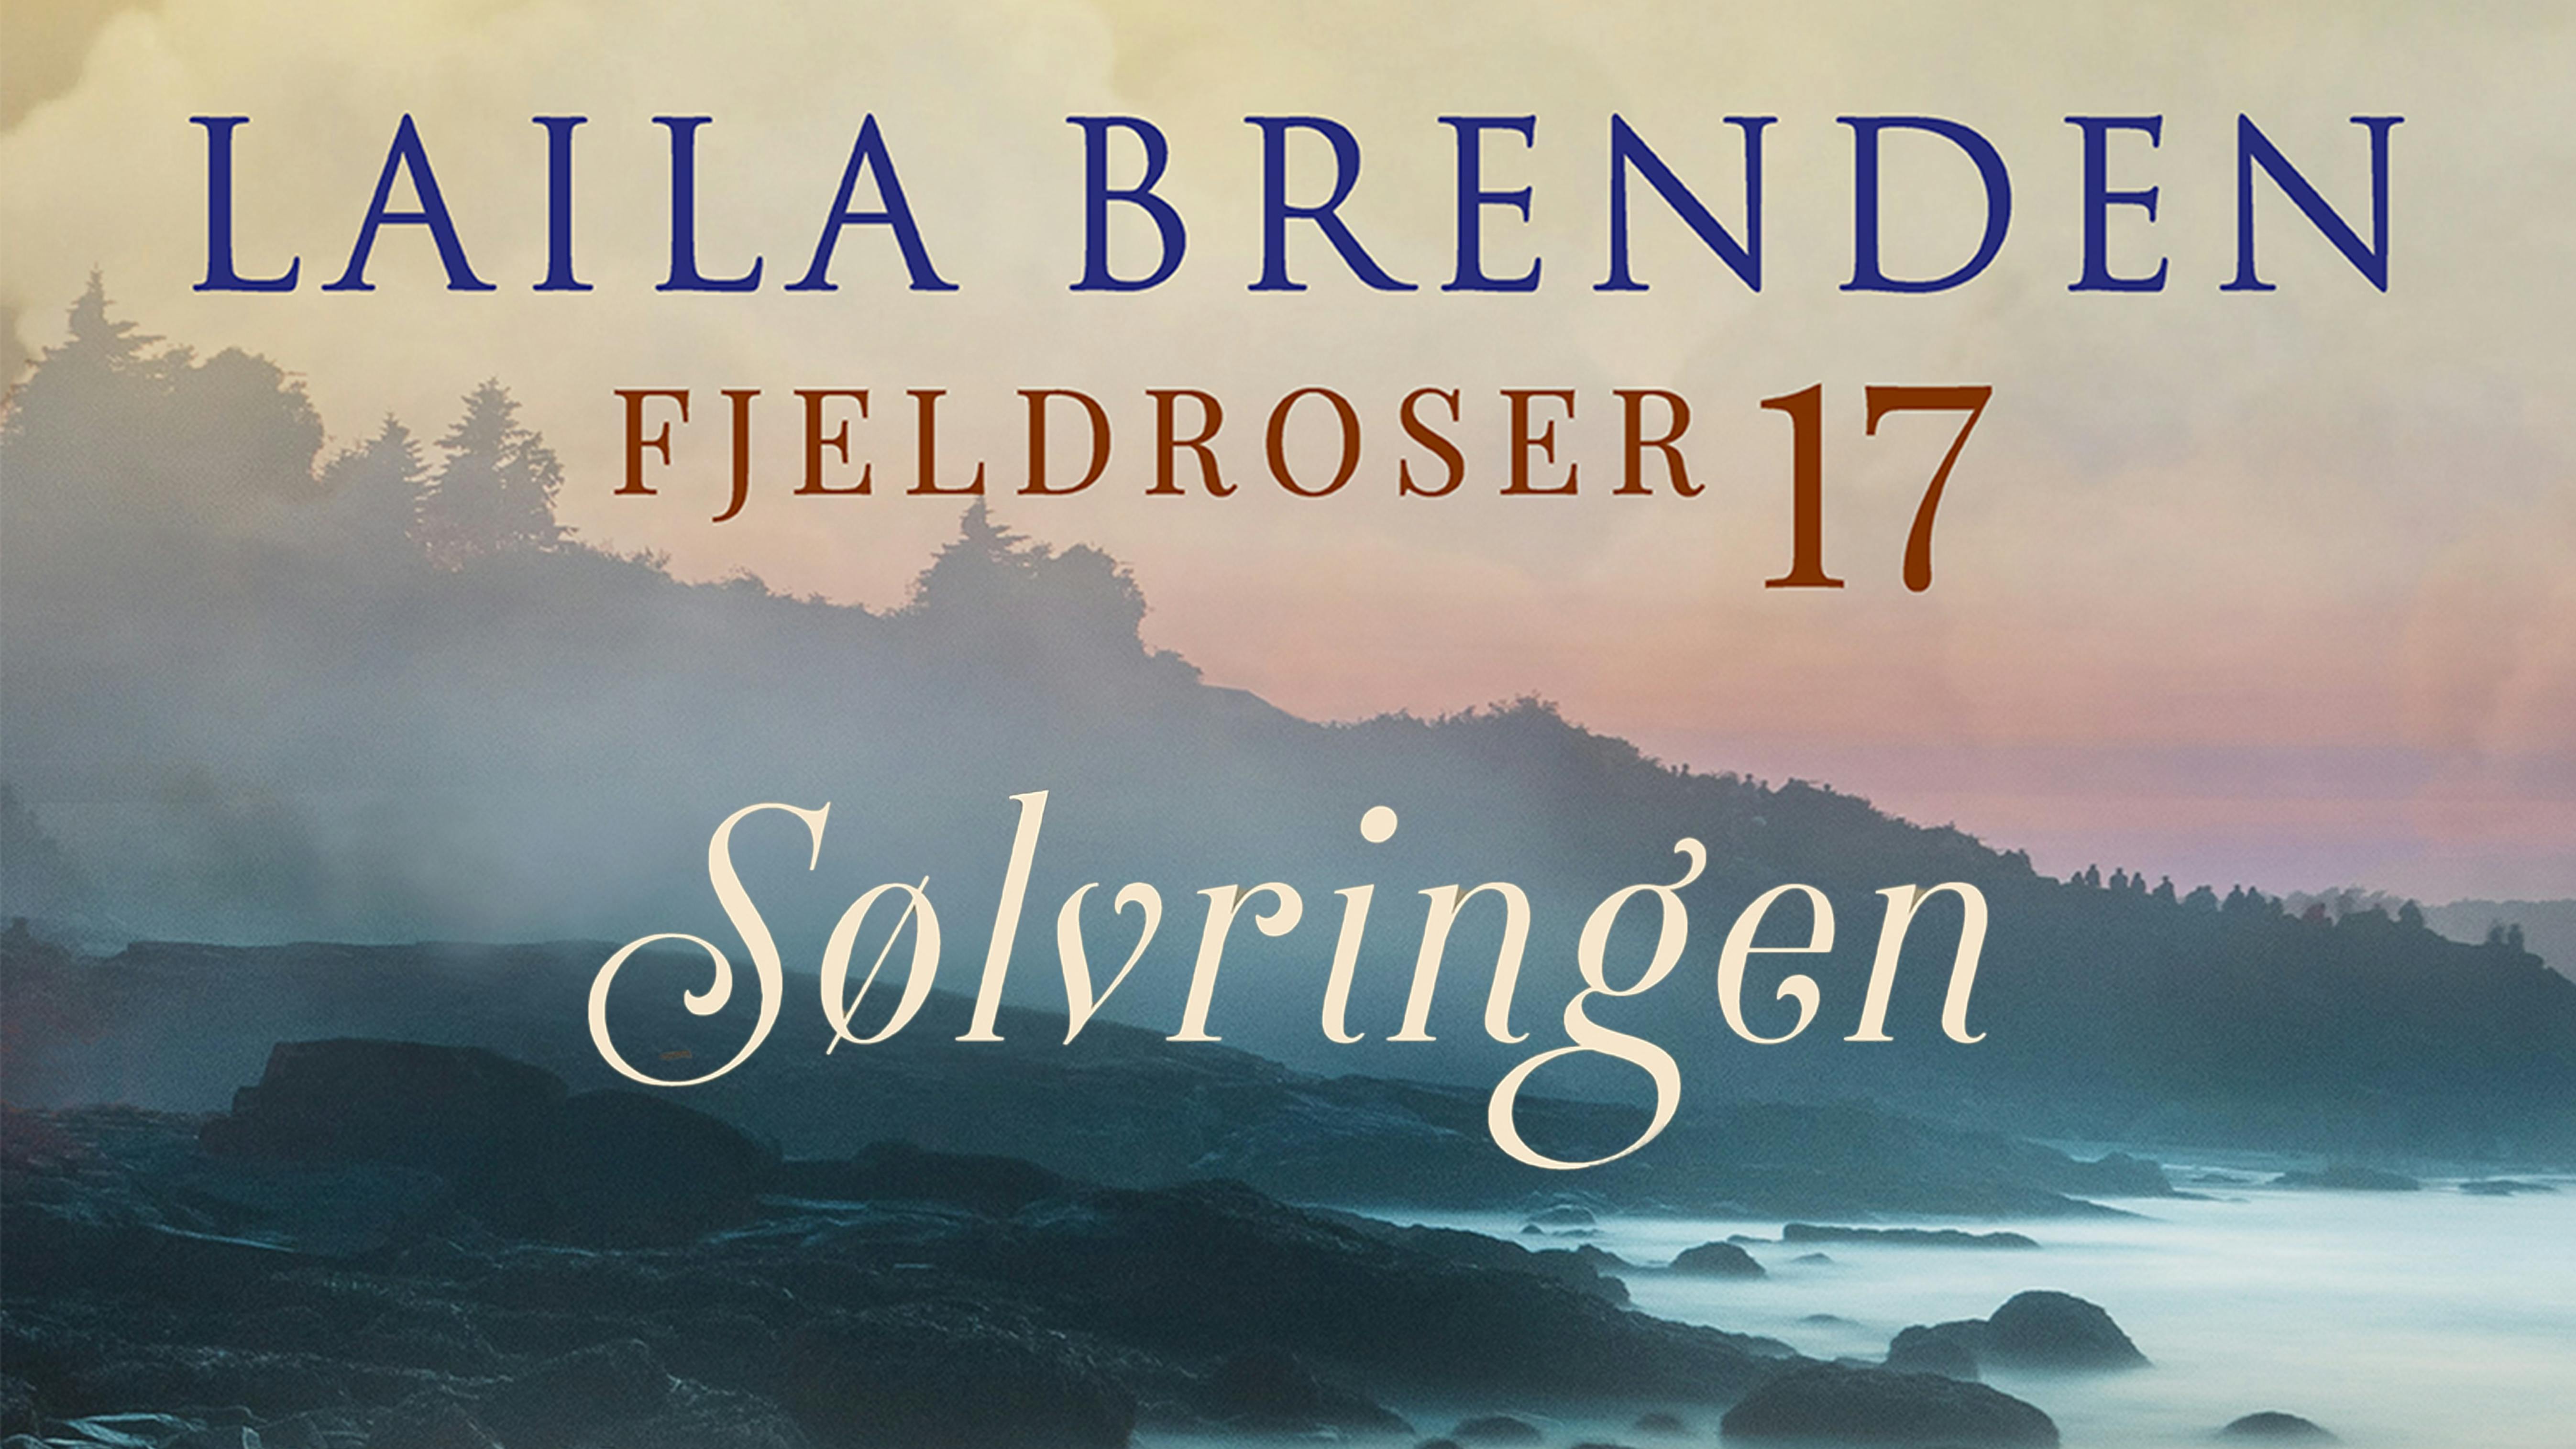 'Fjeldroser 17: Sølvringen' af Laila Brenden